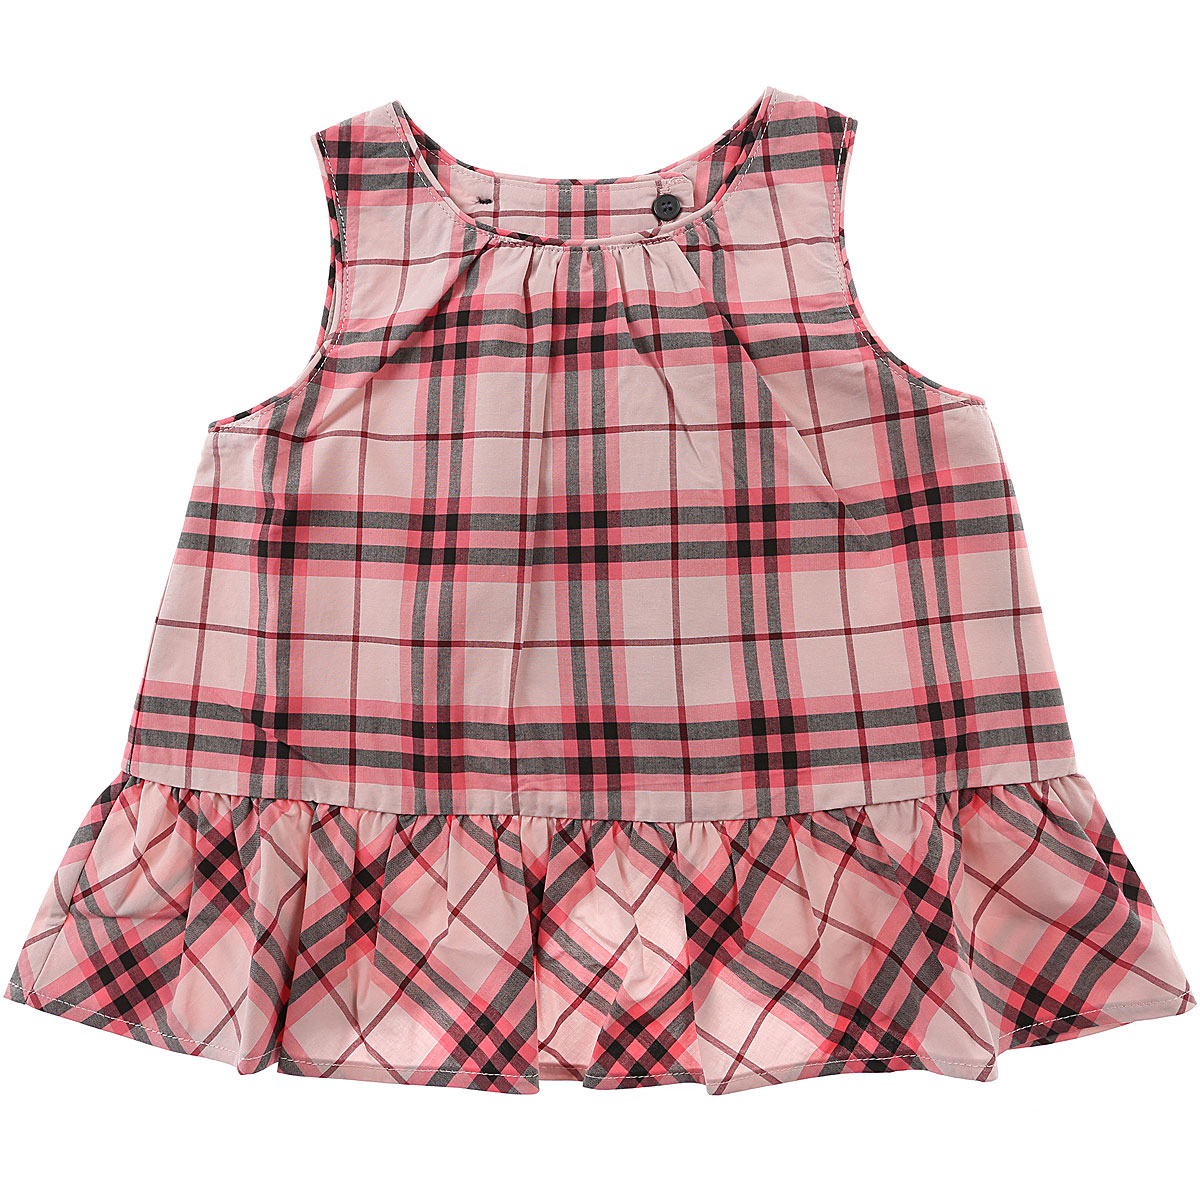 Burberry Baby Kleid für Mädchen Günstig im Outlet Sale, Glänzende Rose, Baumwolle, 2017, 12M 2Y